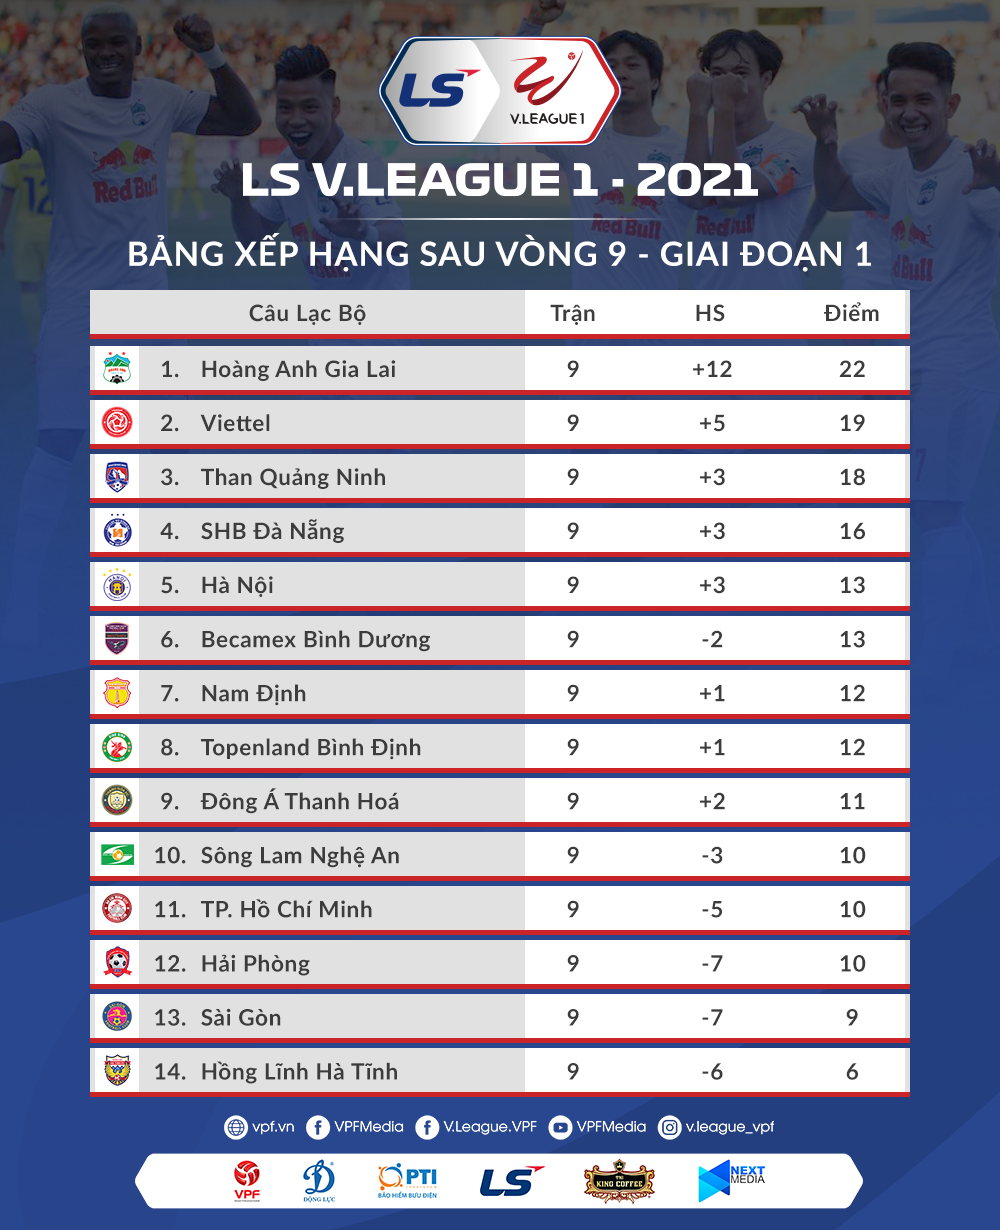 Lịch thi đấu vòng 10 và bảng xếp hạng sau vòng 9 V.League 2021.